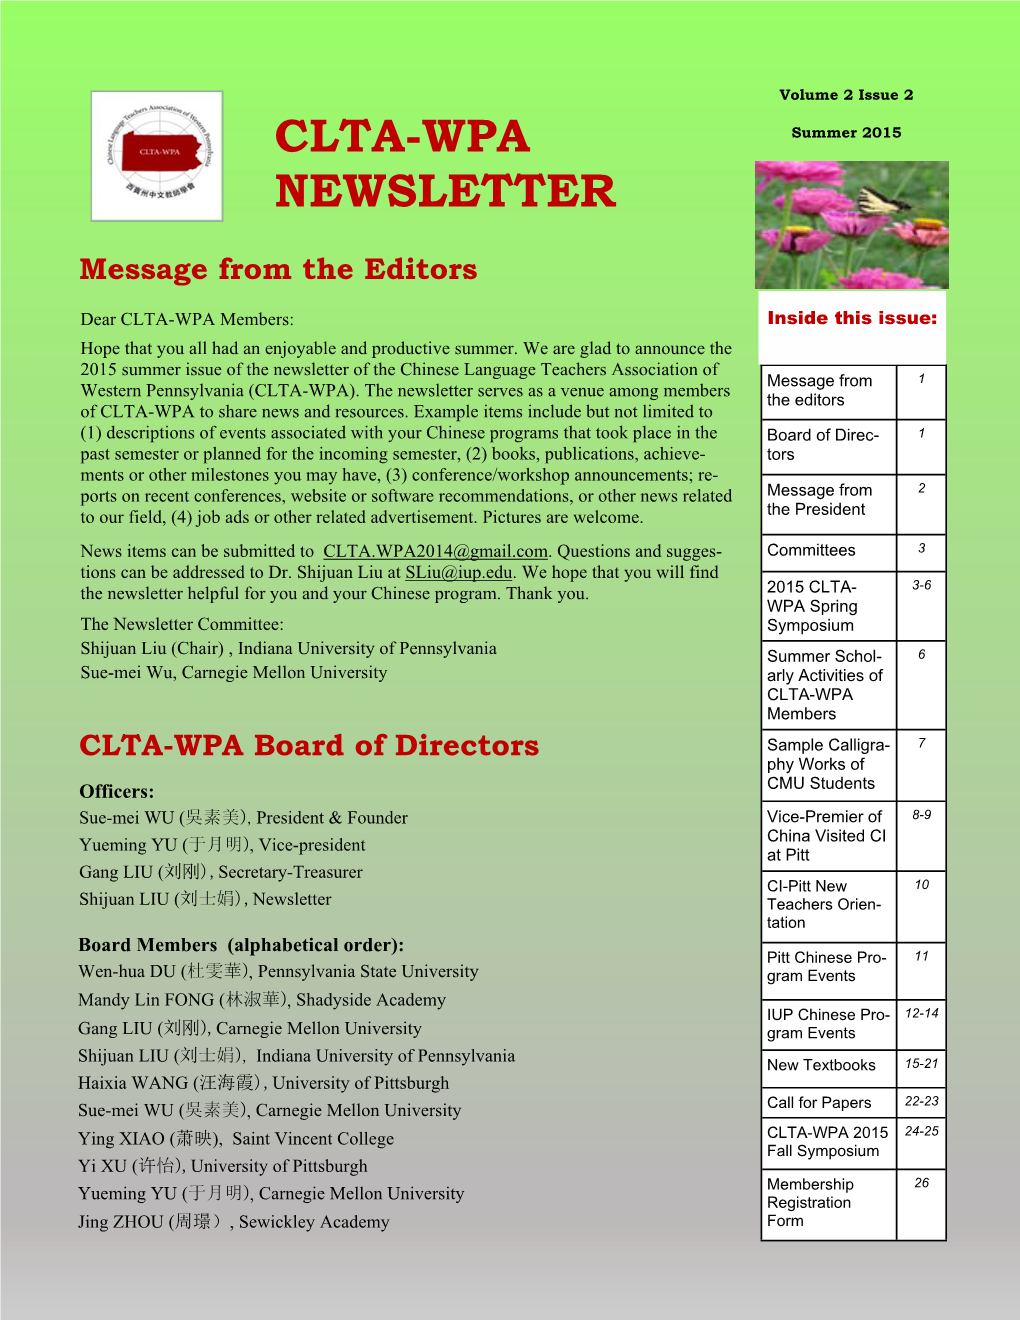 CLTA-WPA NEWSLETTER CLTA-WPA Committees